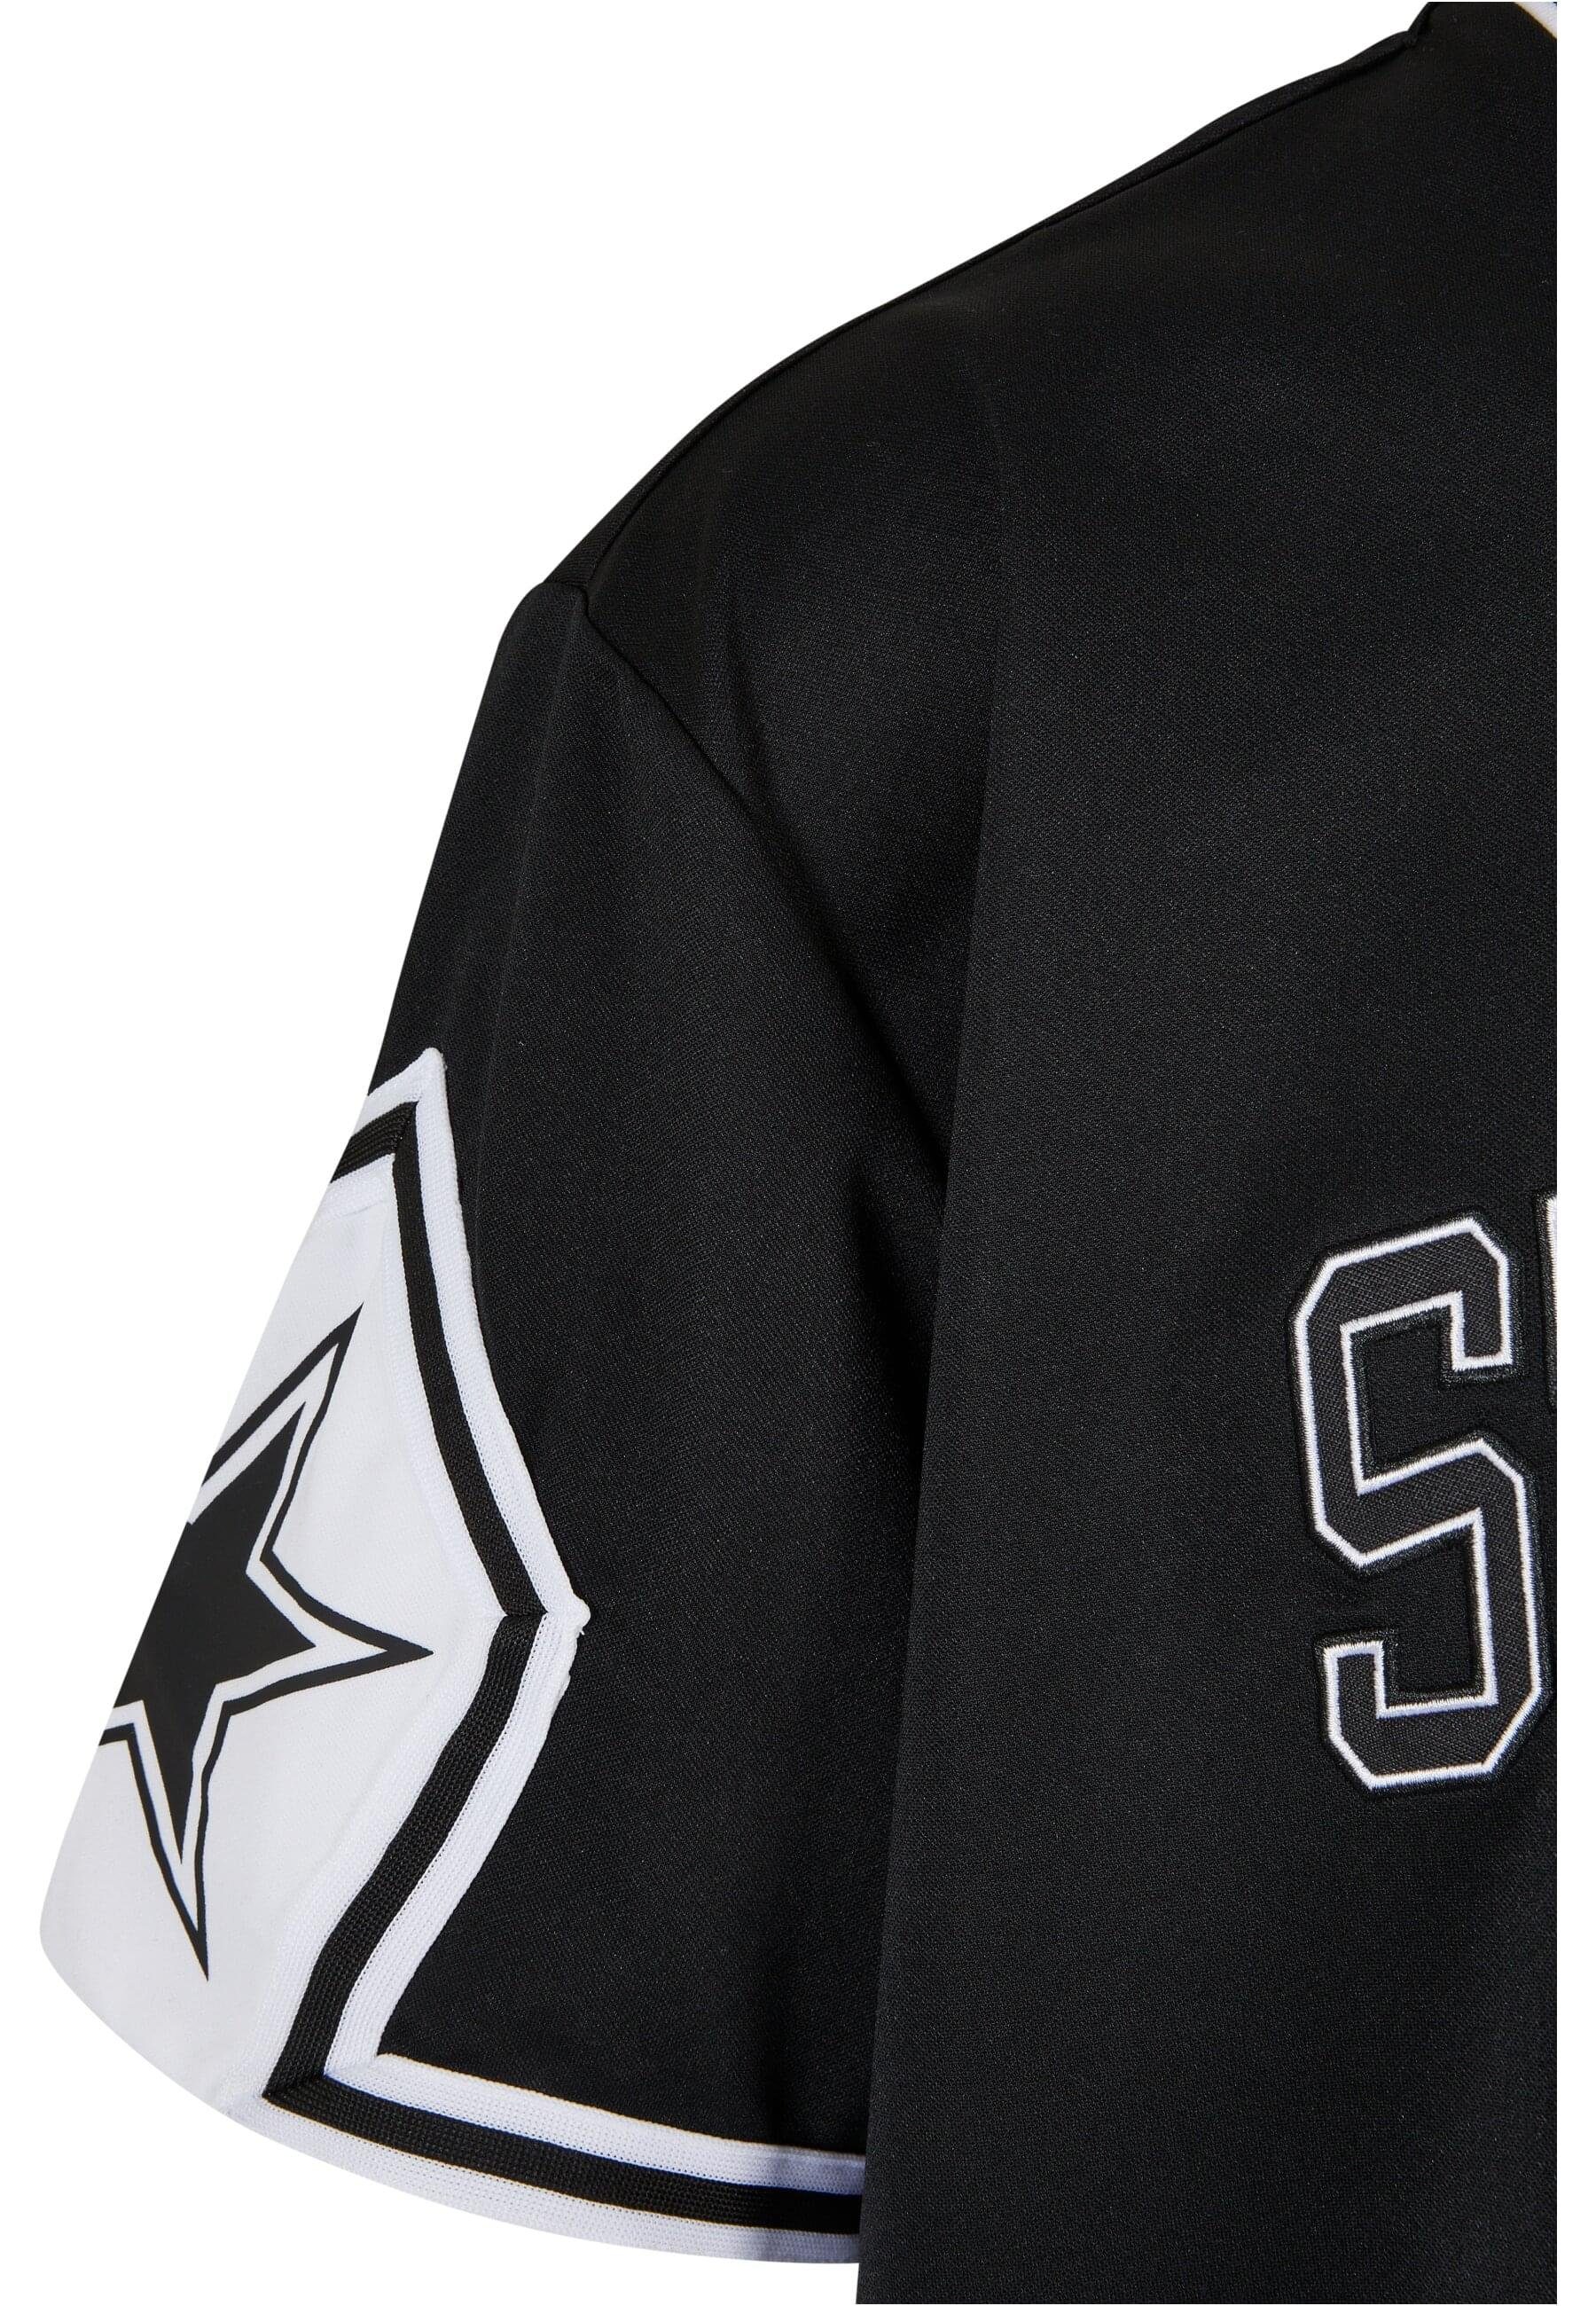 Starter Black Sleeve Herren (1-tlg) Label T-Shirt Sports Starter Star Tee